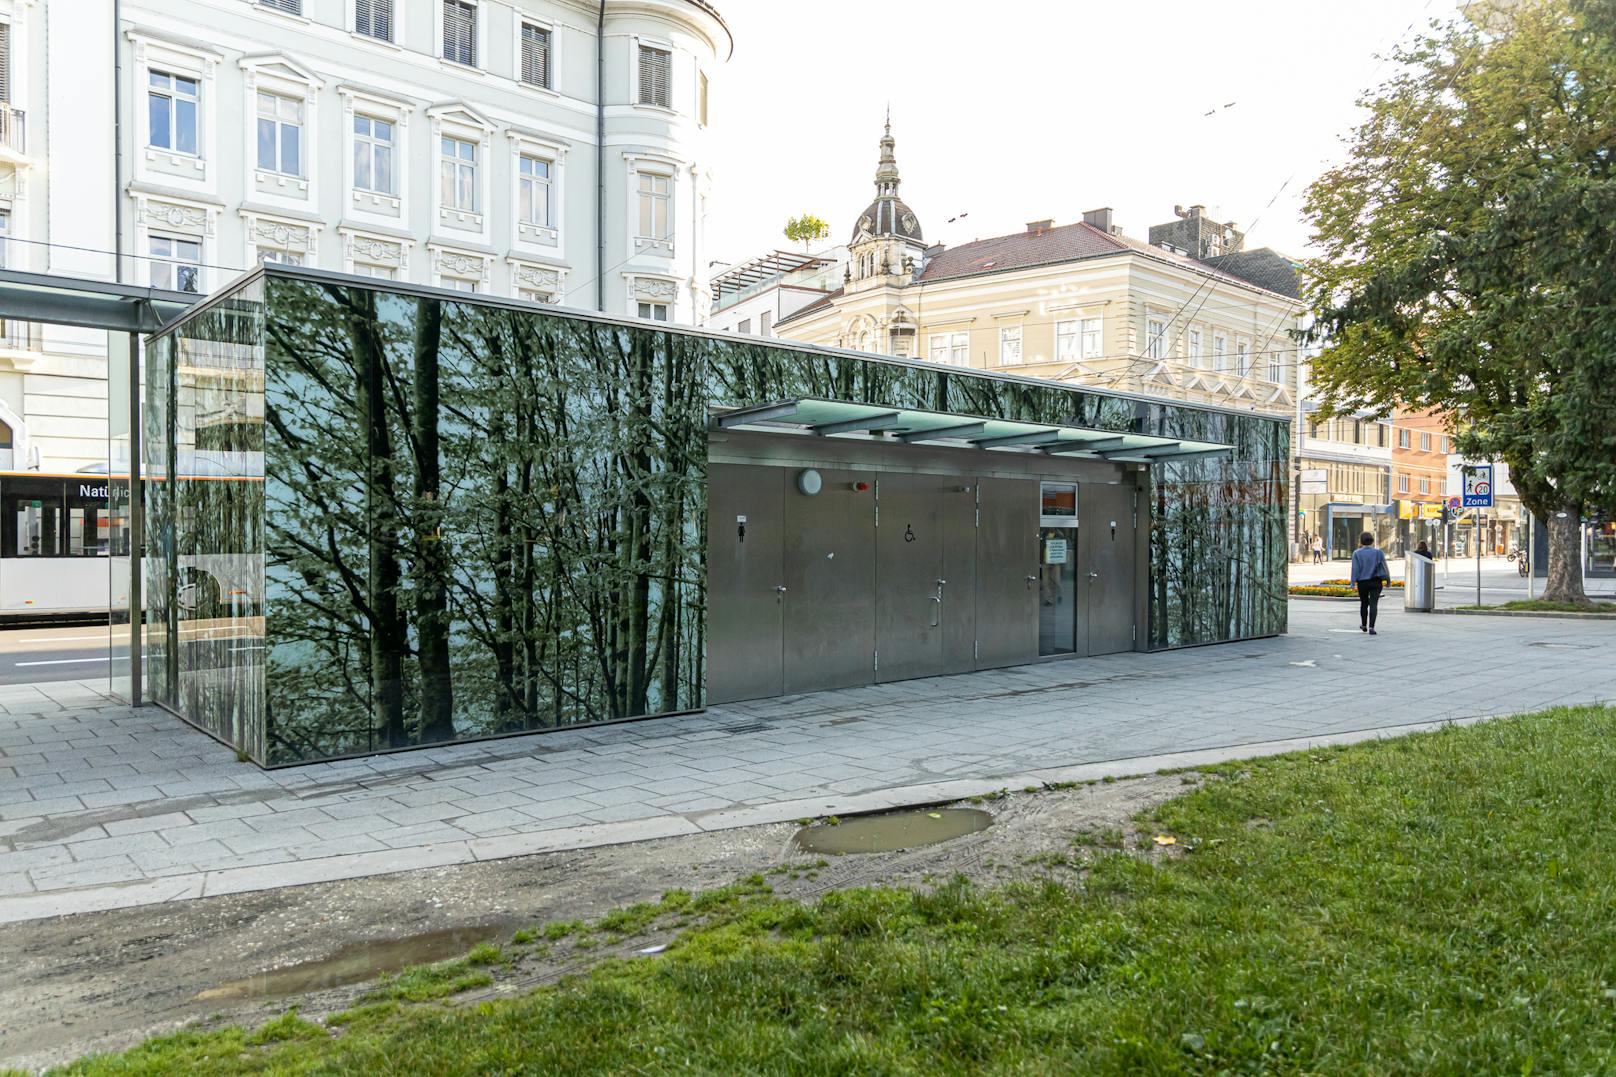 Die Benützung der Toilettenanlage im Volksgarten in Linz kostet künftig 50 Cent.